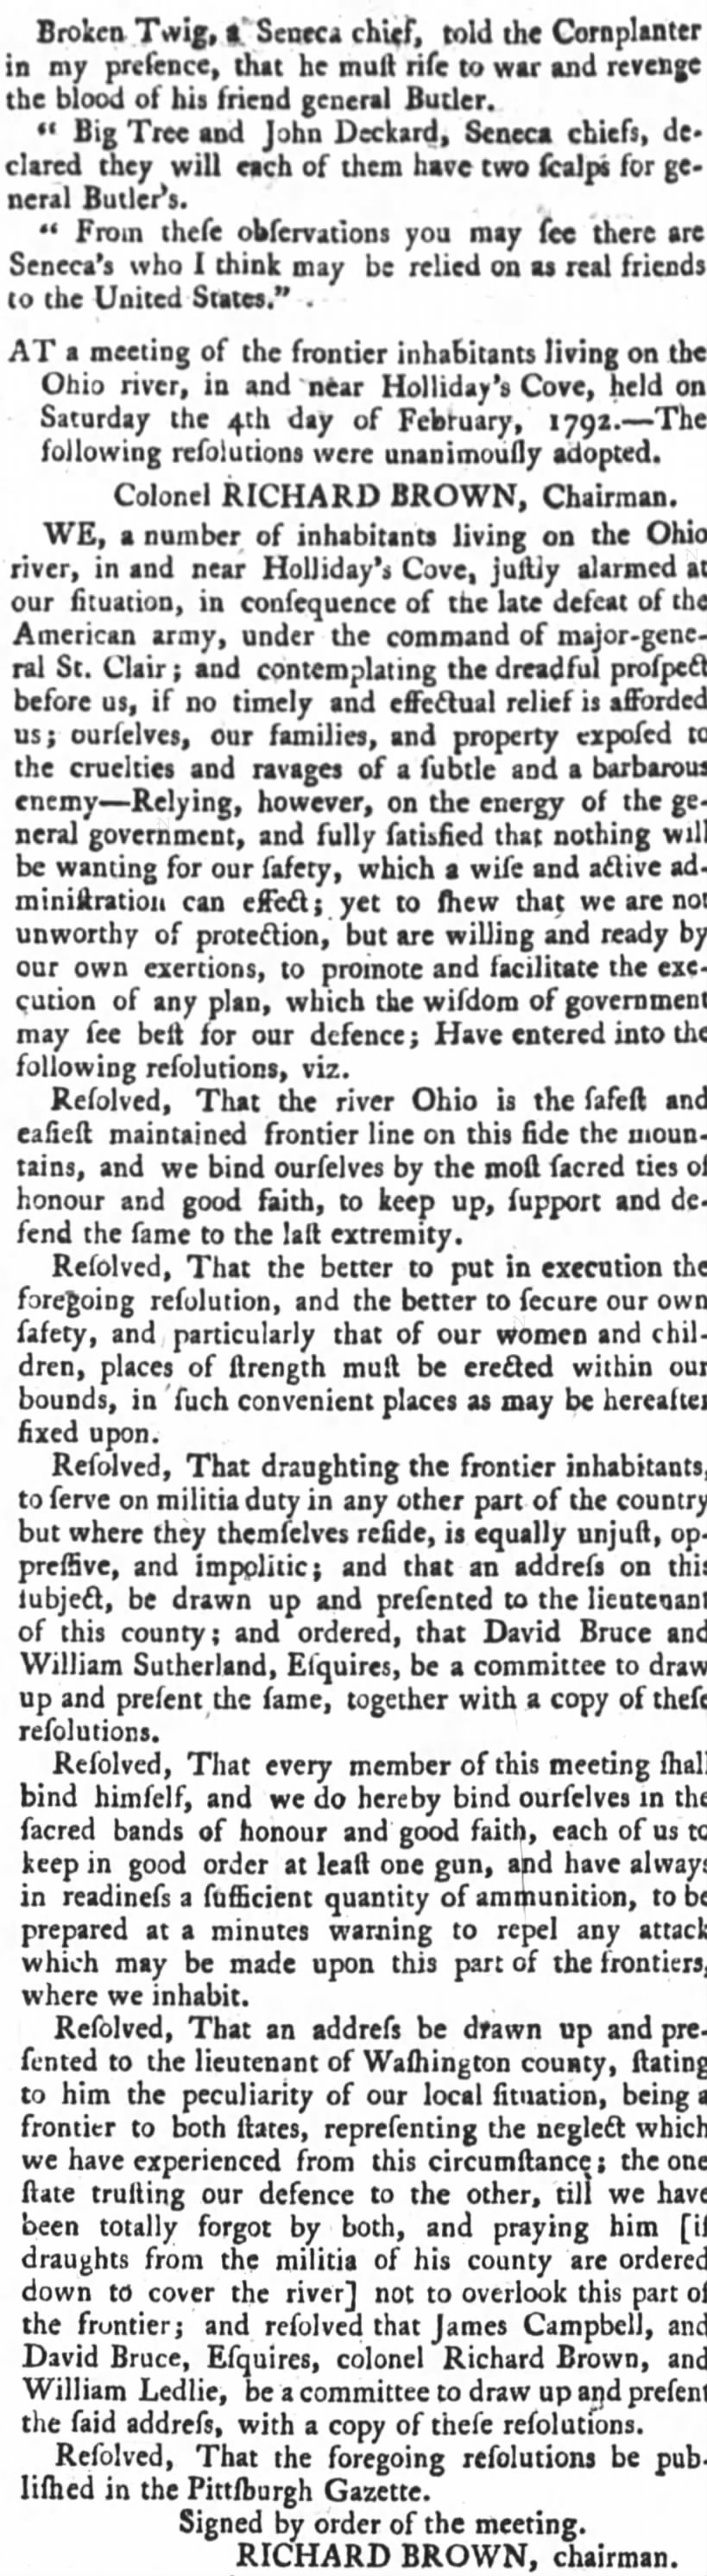 Part 2: the Cornplanter, Senecas, and more (1792)